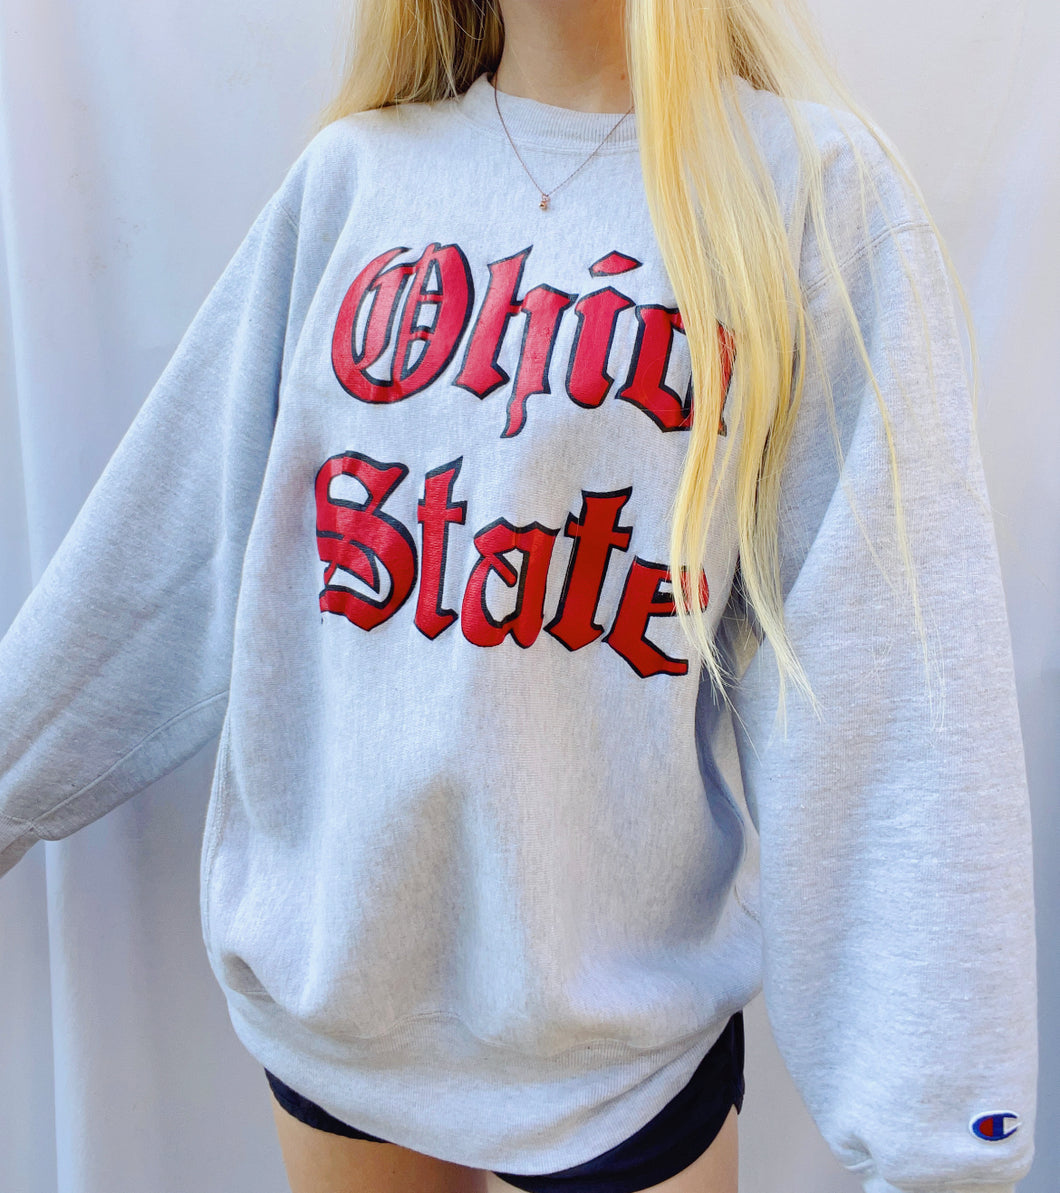 M) Vintage Ohio State Champion Sweatshirt (see –